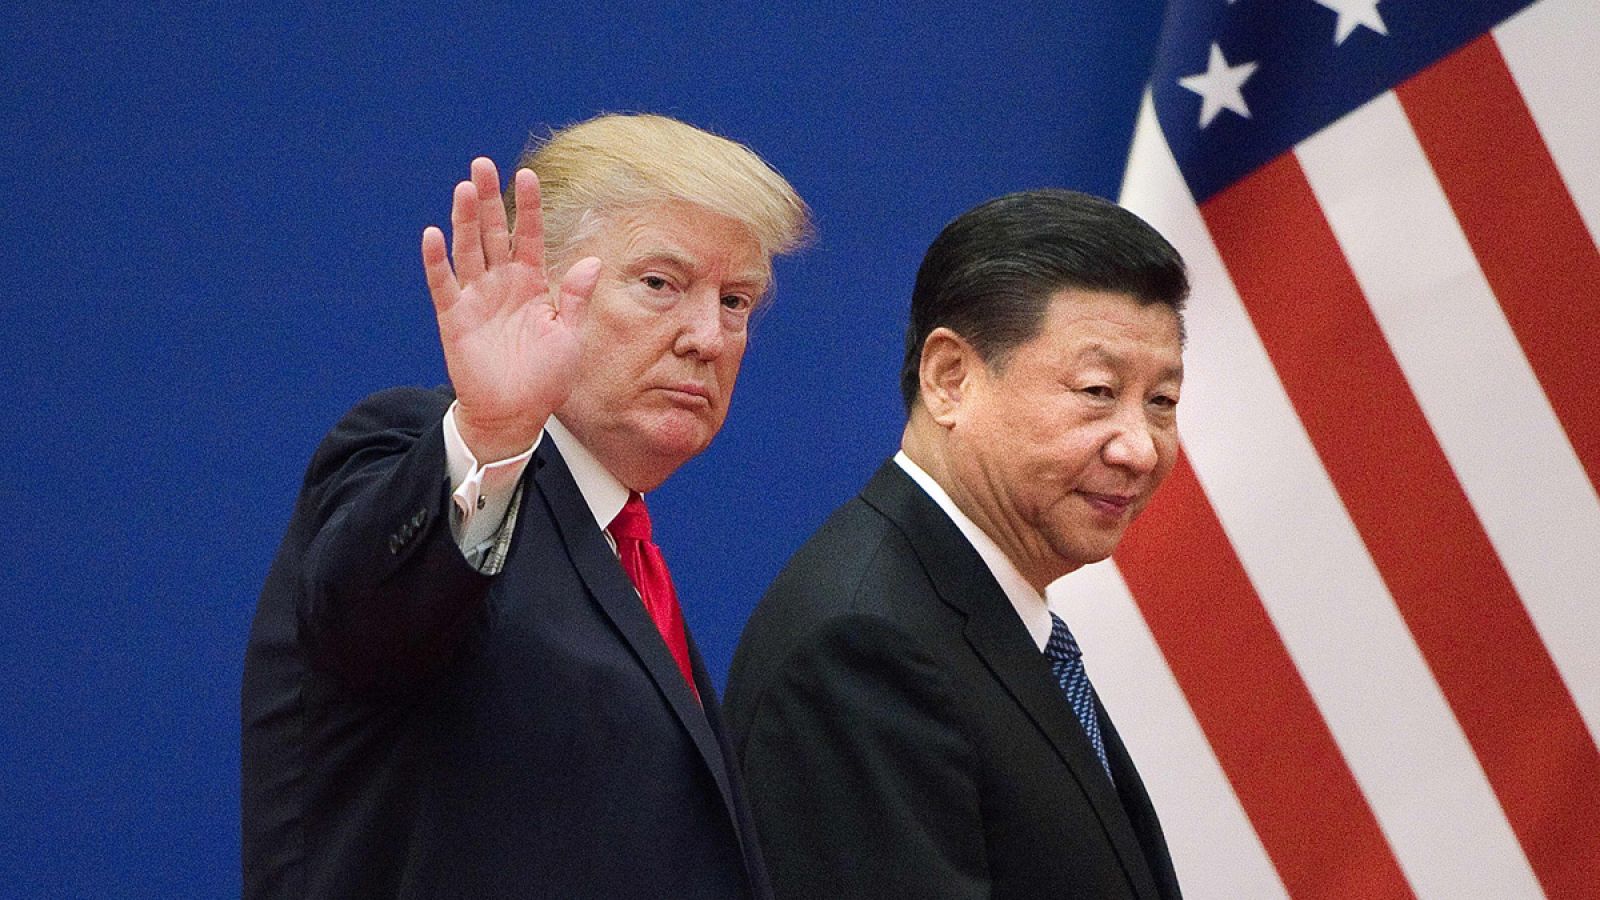 El presidente estadounidense amenaza con aplicar aranceles a China si no se reúne con Xi en el G20